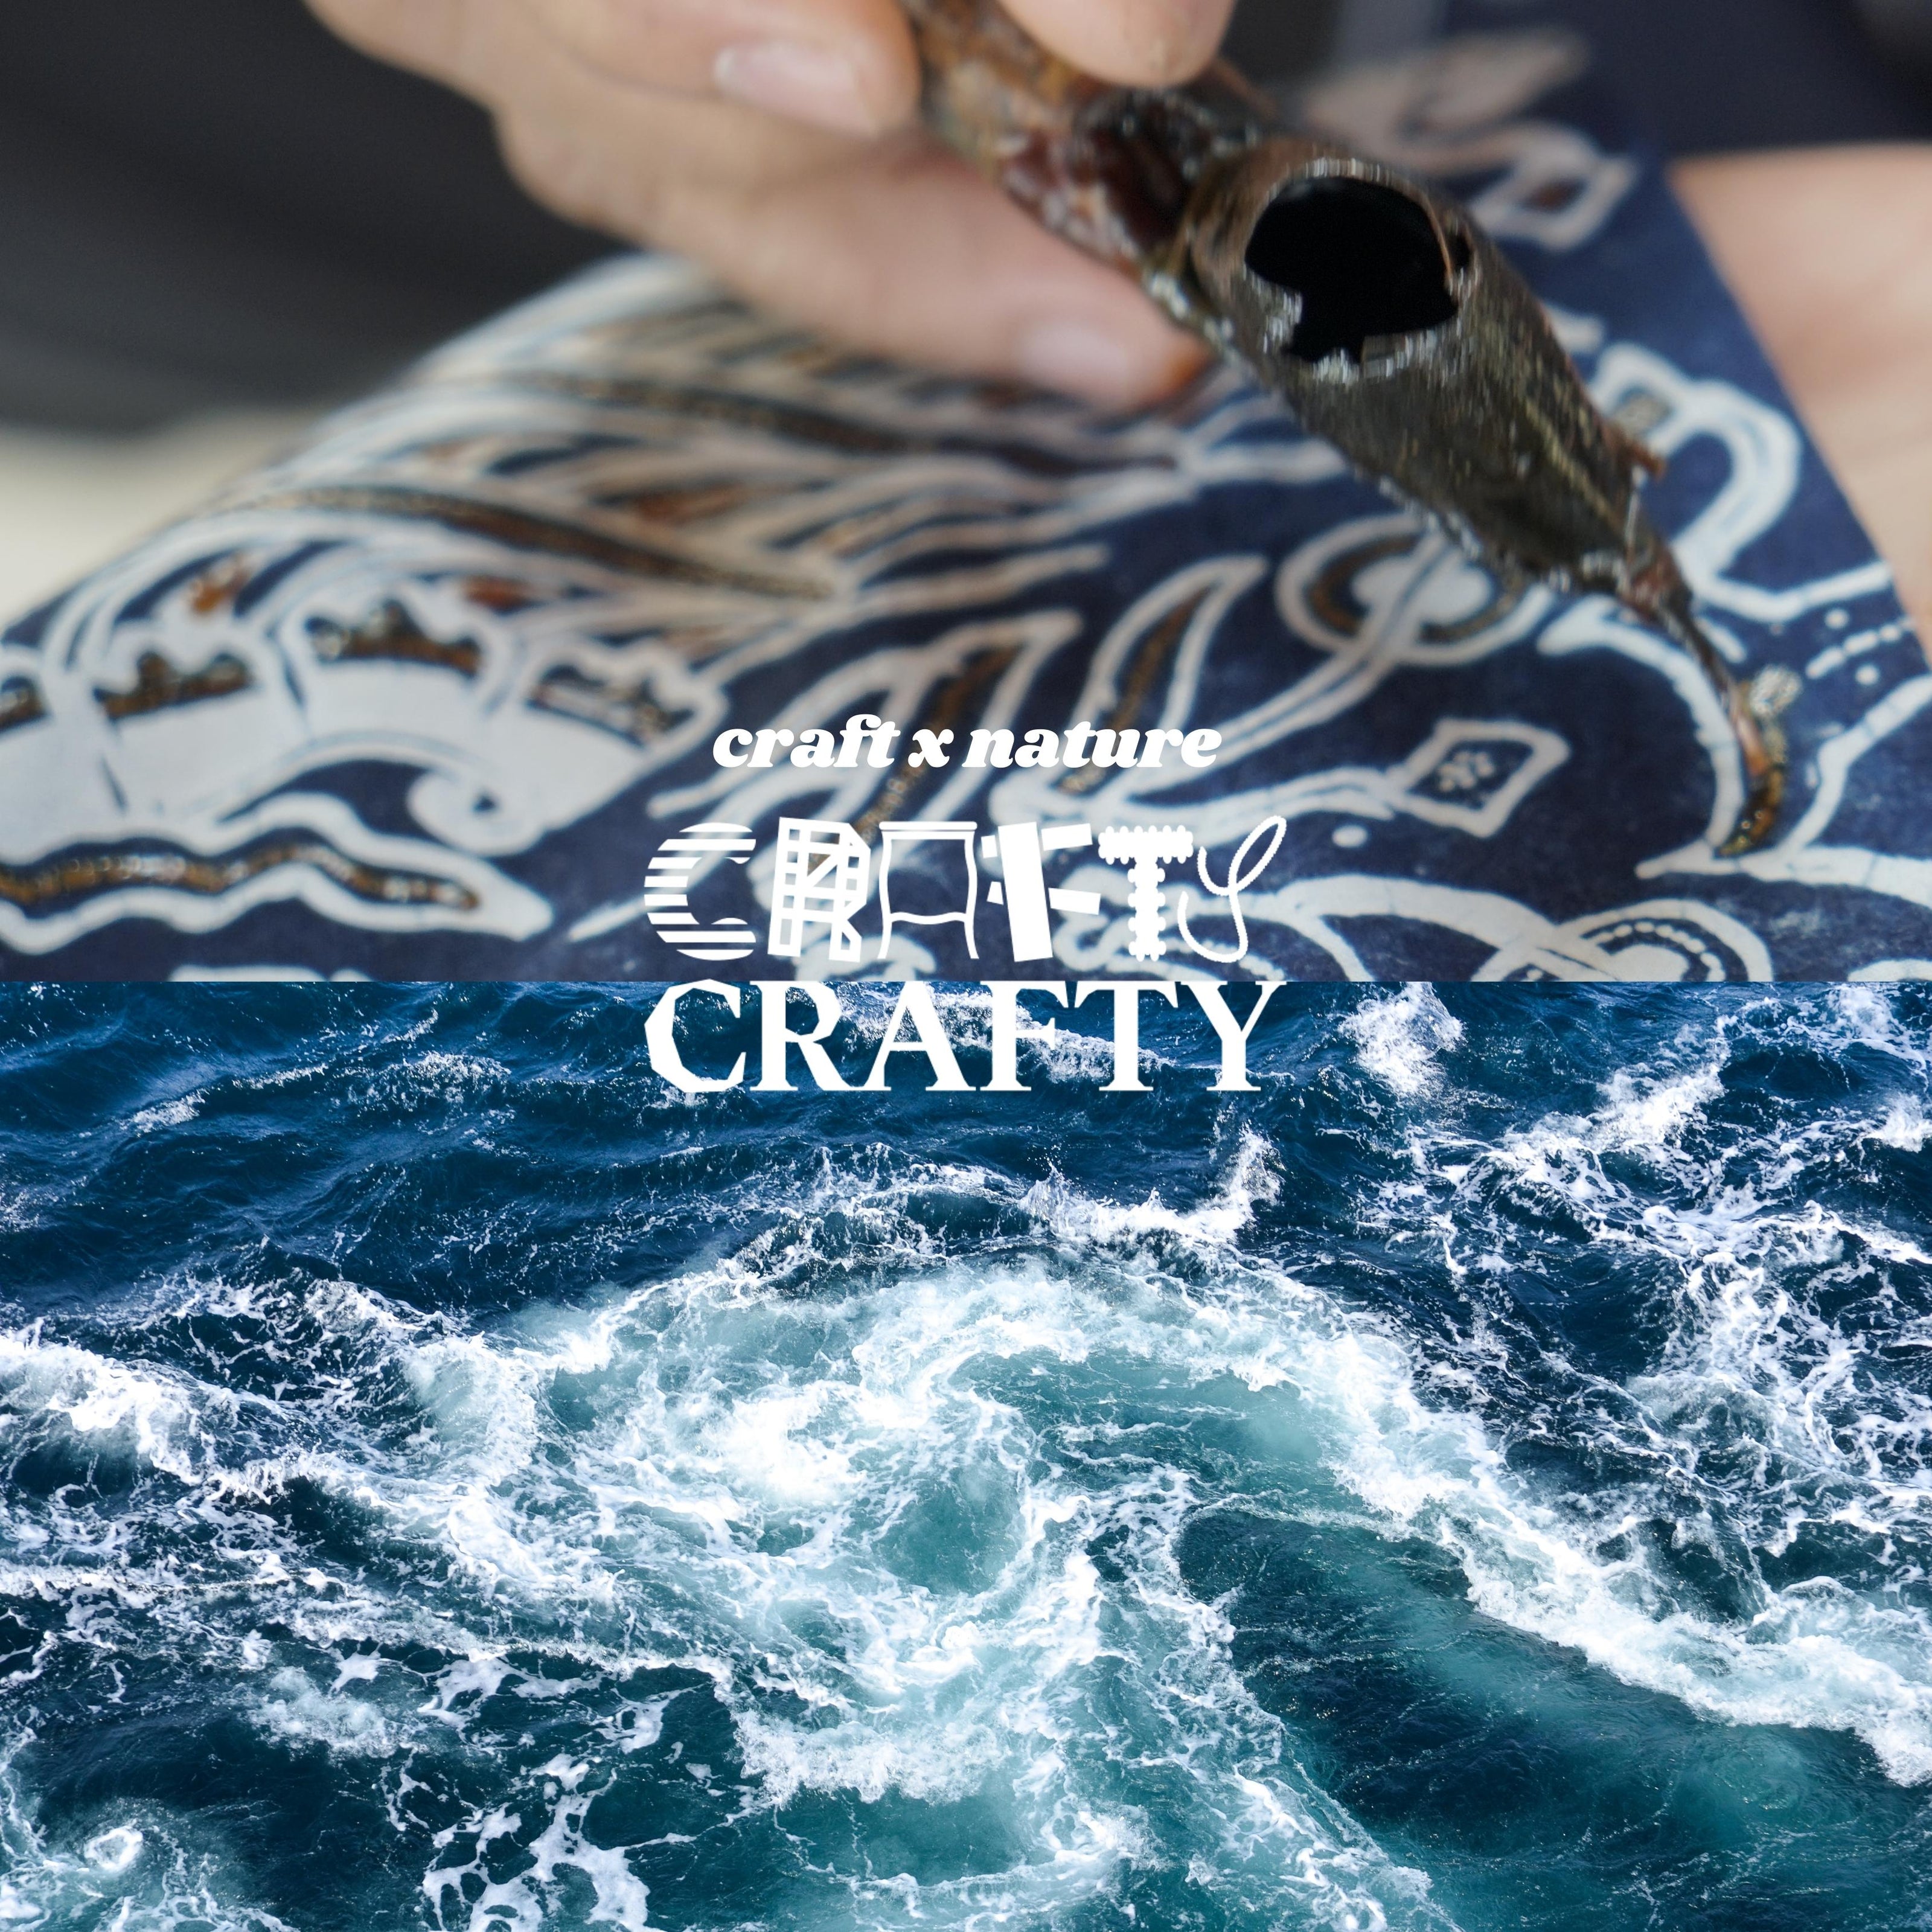 Crafty Crafty Traditional Craft Banner  Batik x Ocean